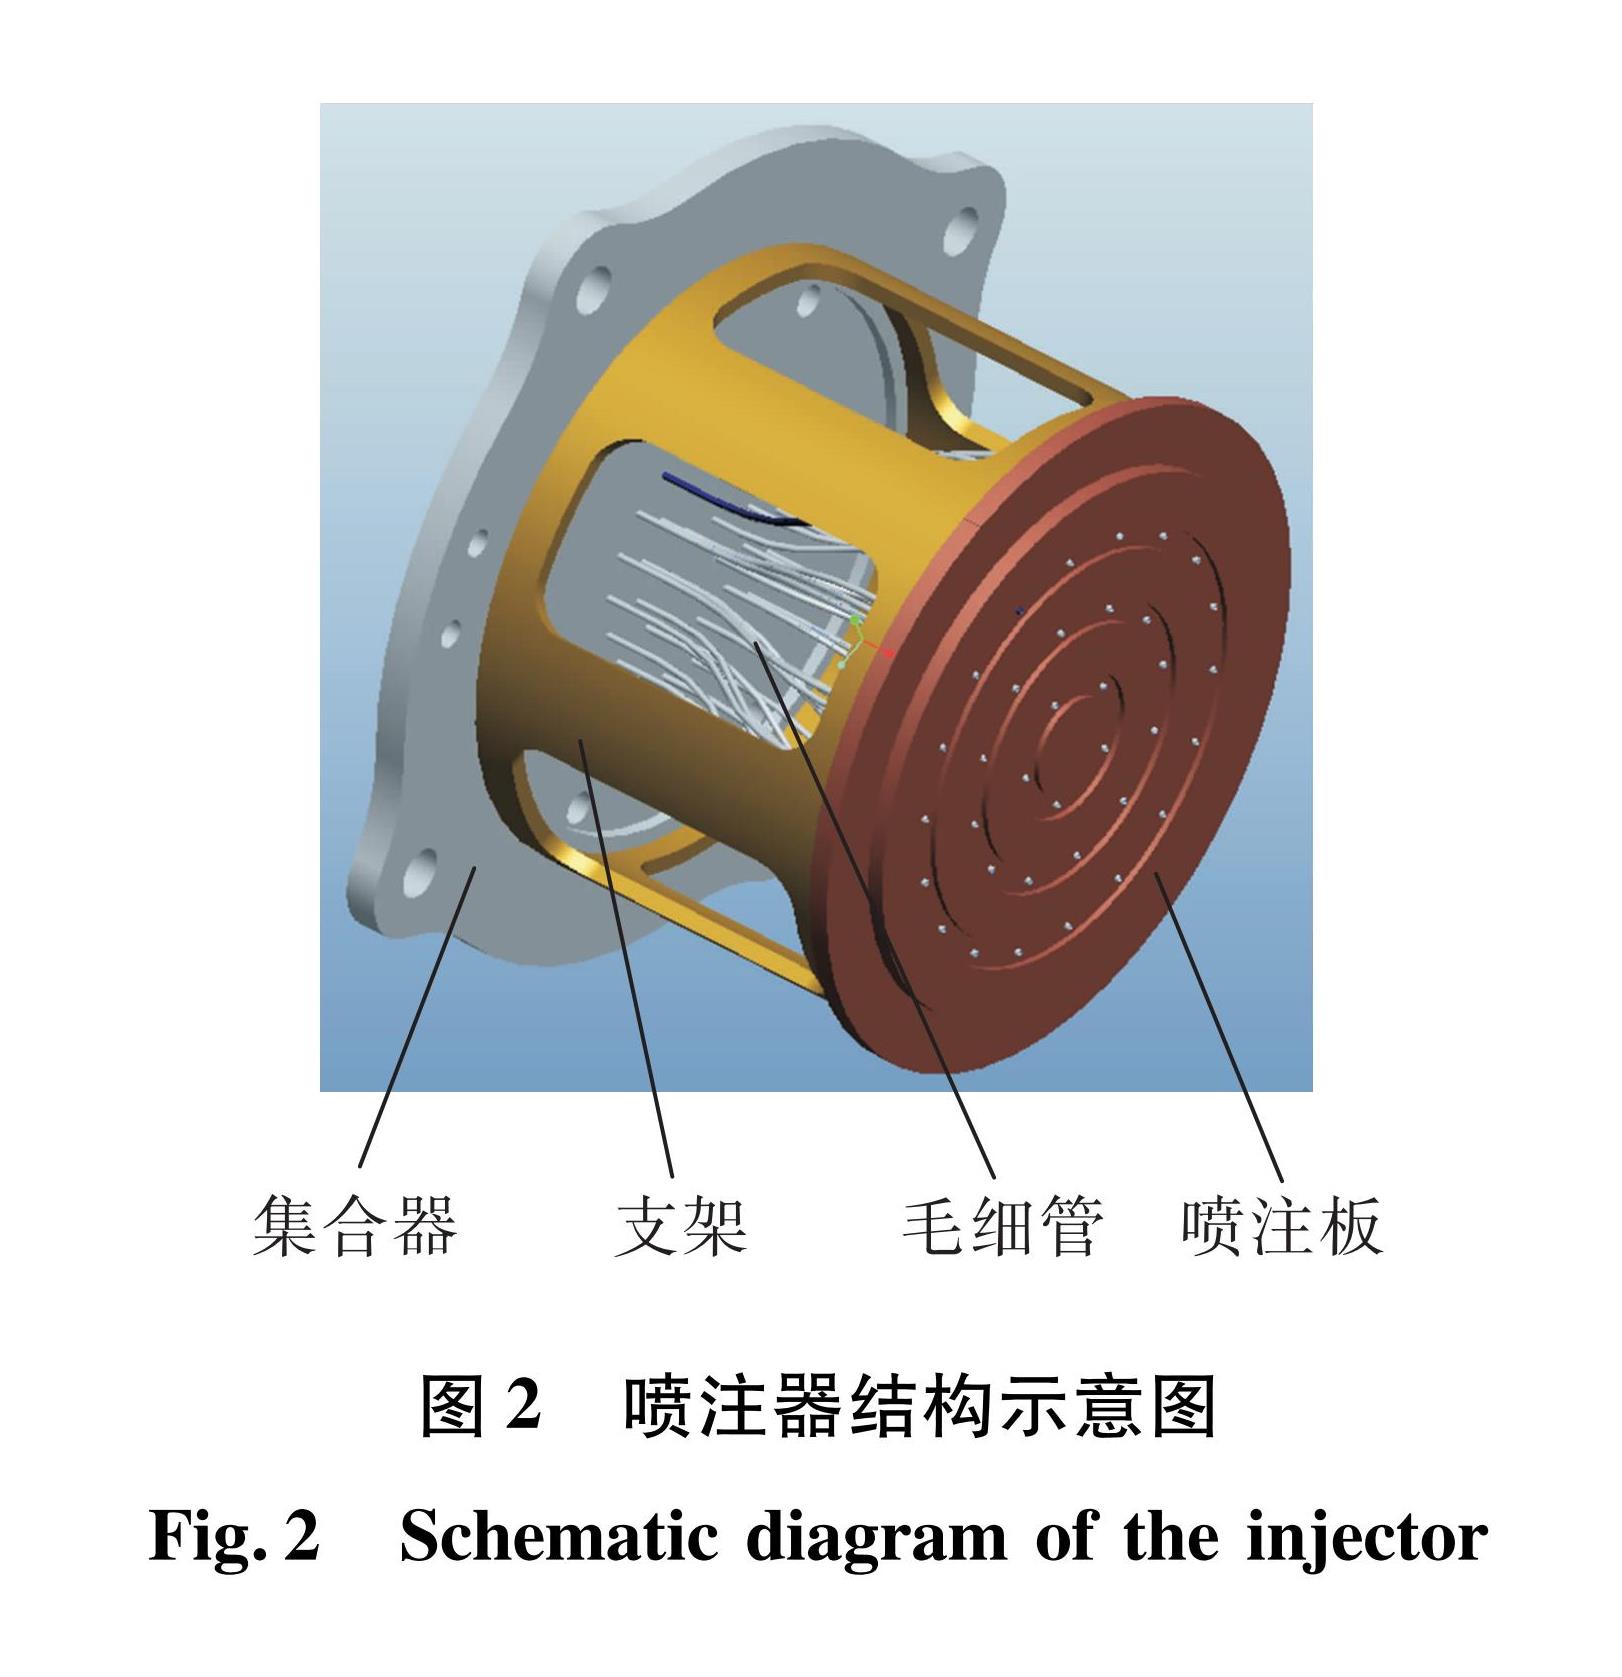 图2 喷注器结构示意图<br/>Fig.2 Schematic diagram of the injector